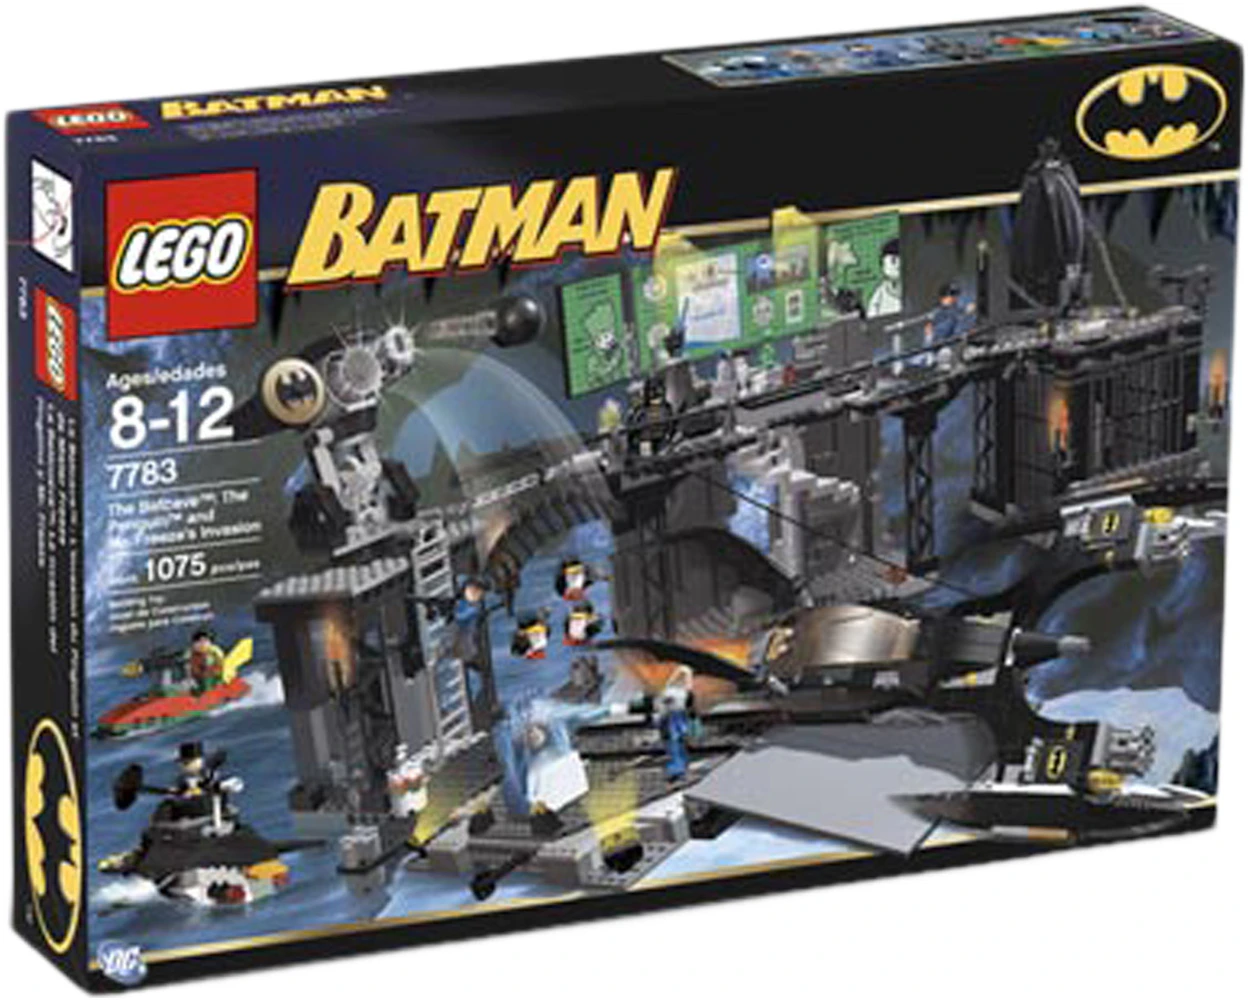 LEGO Batman The Batcave: The Penguin and Mr. Freeze's Invasion Set 7783 - US